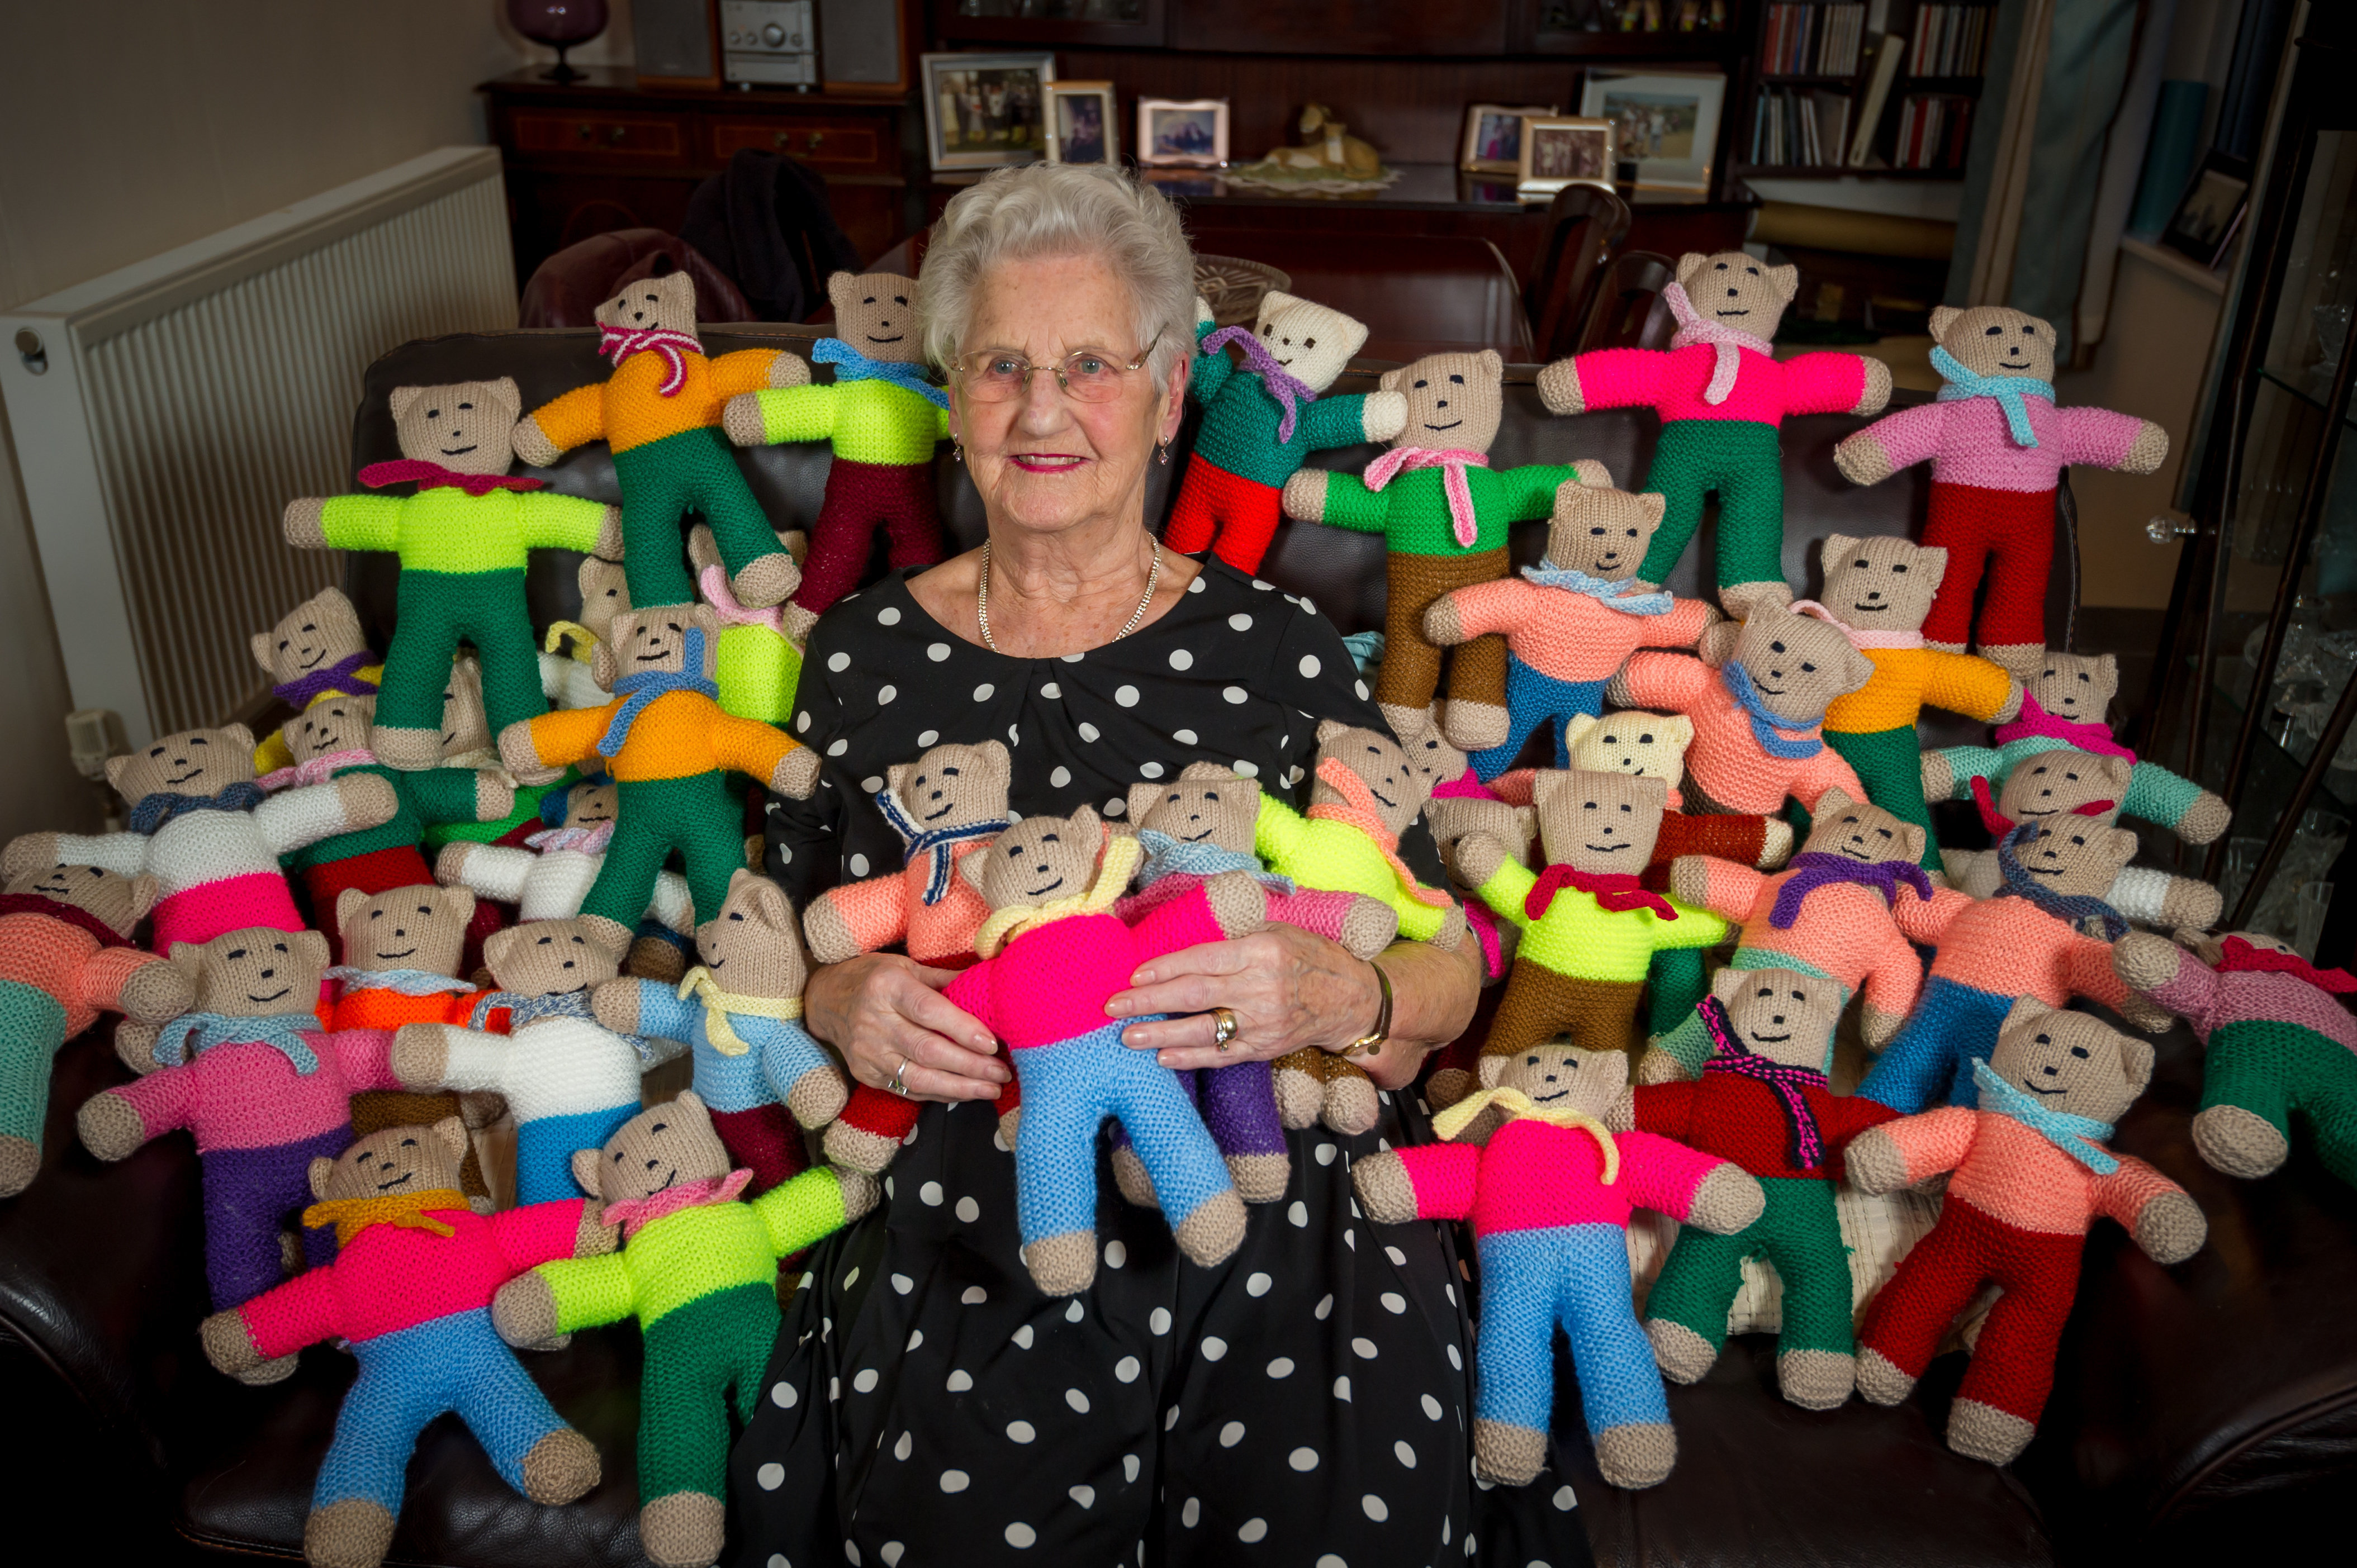 teddies for tragedies knitting pattern